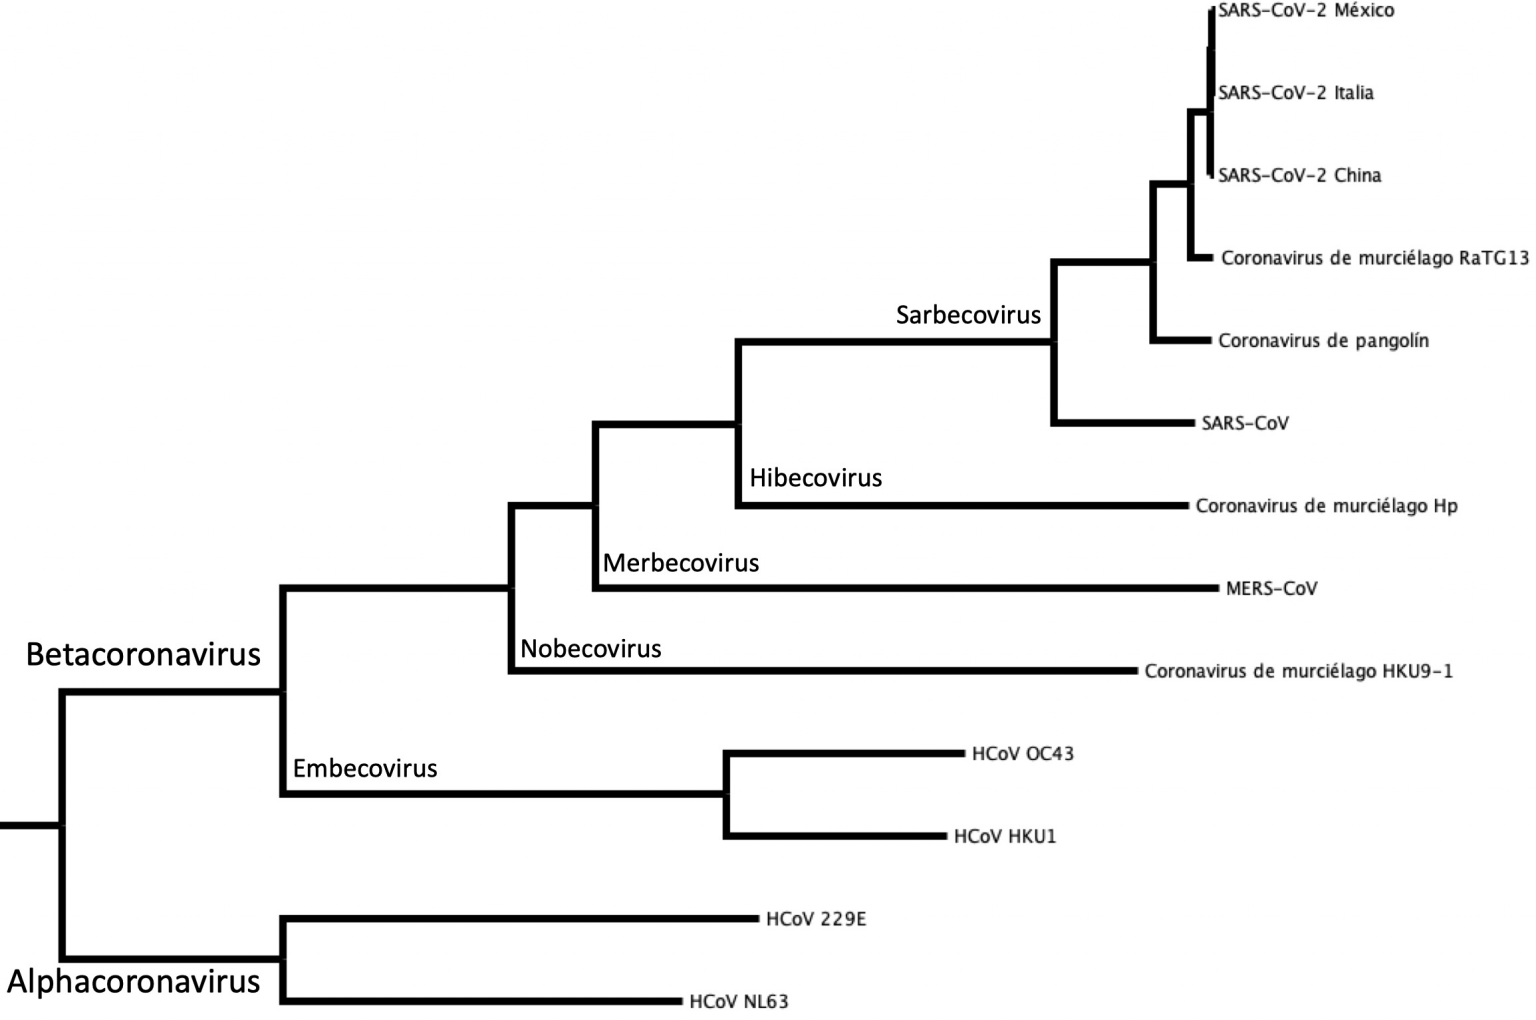 Figura 2. Relación evolutiva entre los coronavirus del género Betacoronavirus. Árbol filogenético de máxima verosimilitud realizado con los genomas completos de 13 coronavirus. Cada par de ramas parte de un nodo (origen) común. Cada nodo representa a un ancestro común. La distancia al nodo refleja el tiempo de divergencia desde el ancestro. Por ejemplo, SARS-CoV-2 de México tiene un ancestro común más cercano con el SARS-CoV-2 de Italia que con el MERS-CoV. Significa que ha pasado menos tiempo desde que las variantes de SARS-CoV-2 de México e Italia se separaron a partir de una misma población.